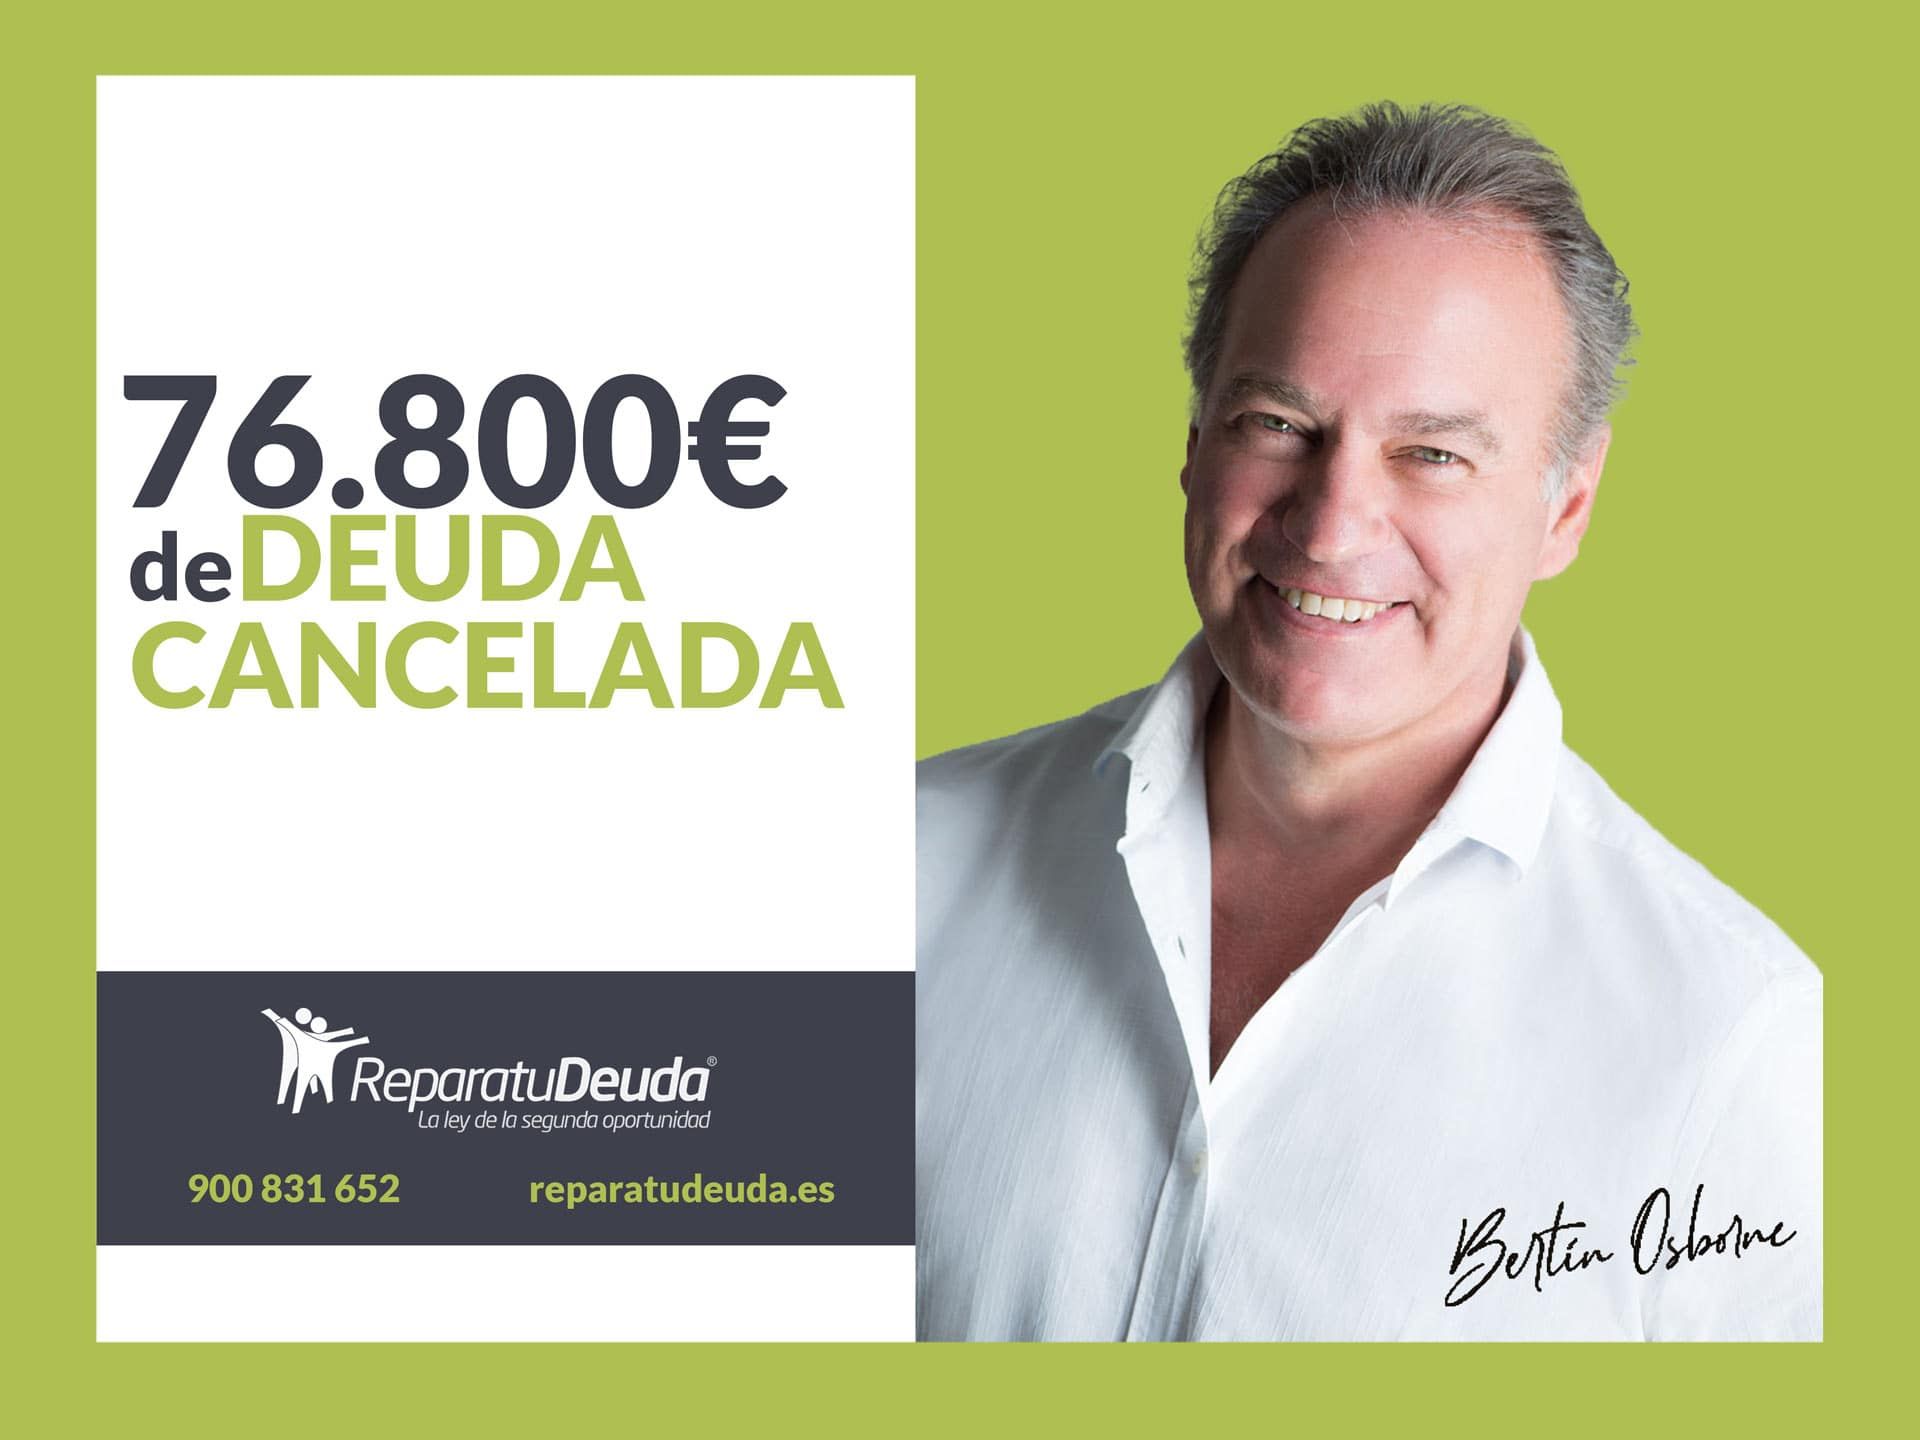 Repara tu Deuda Abogados cancela 76.800? en Barcelona gracias a la Ley de Segunda Oportunidad